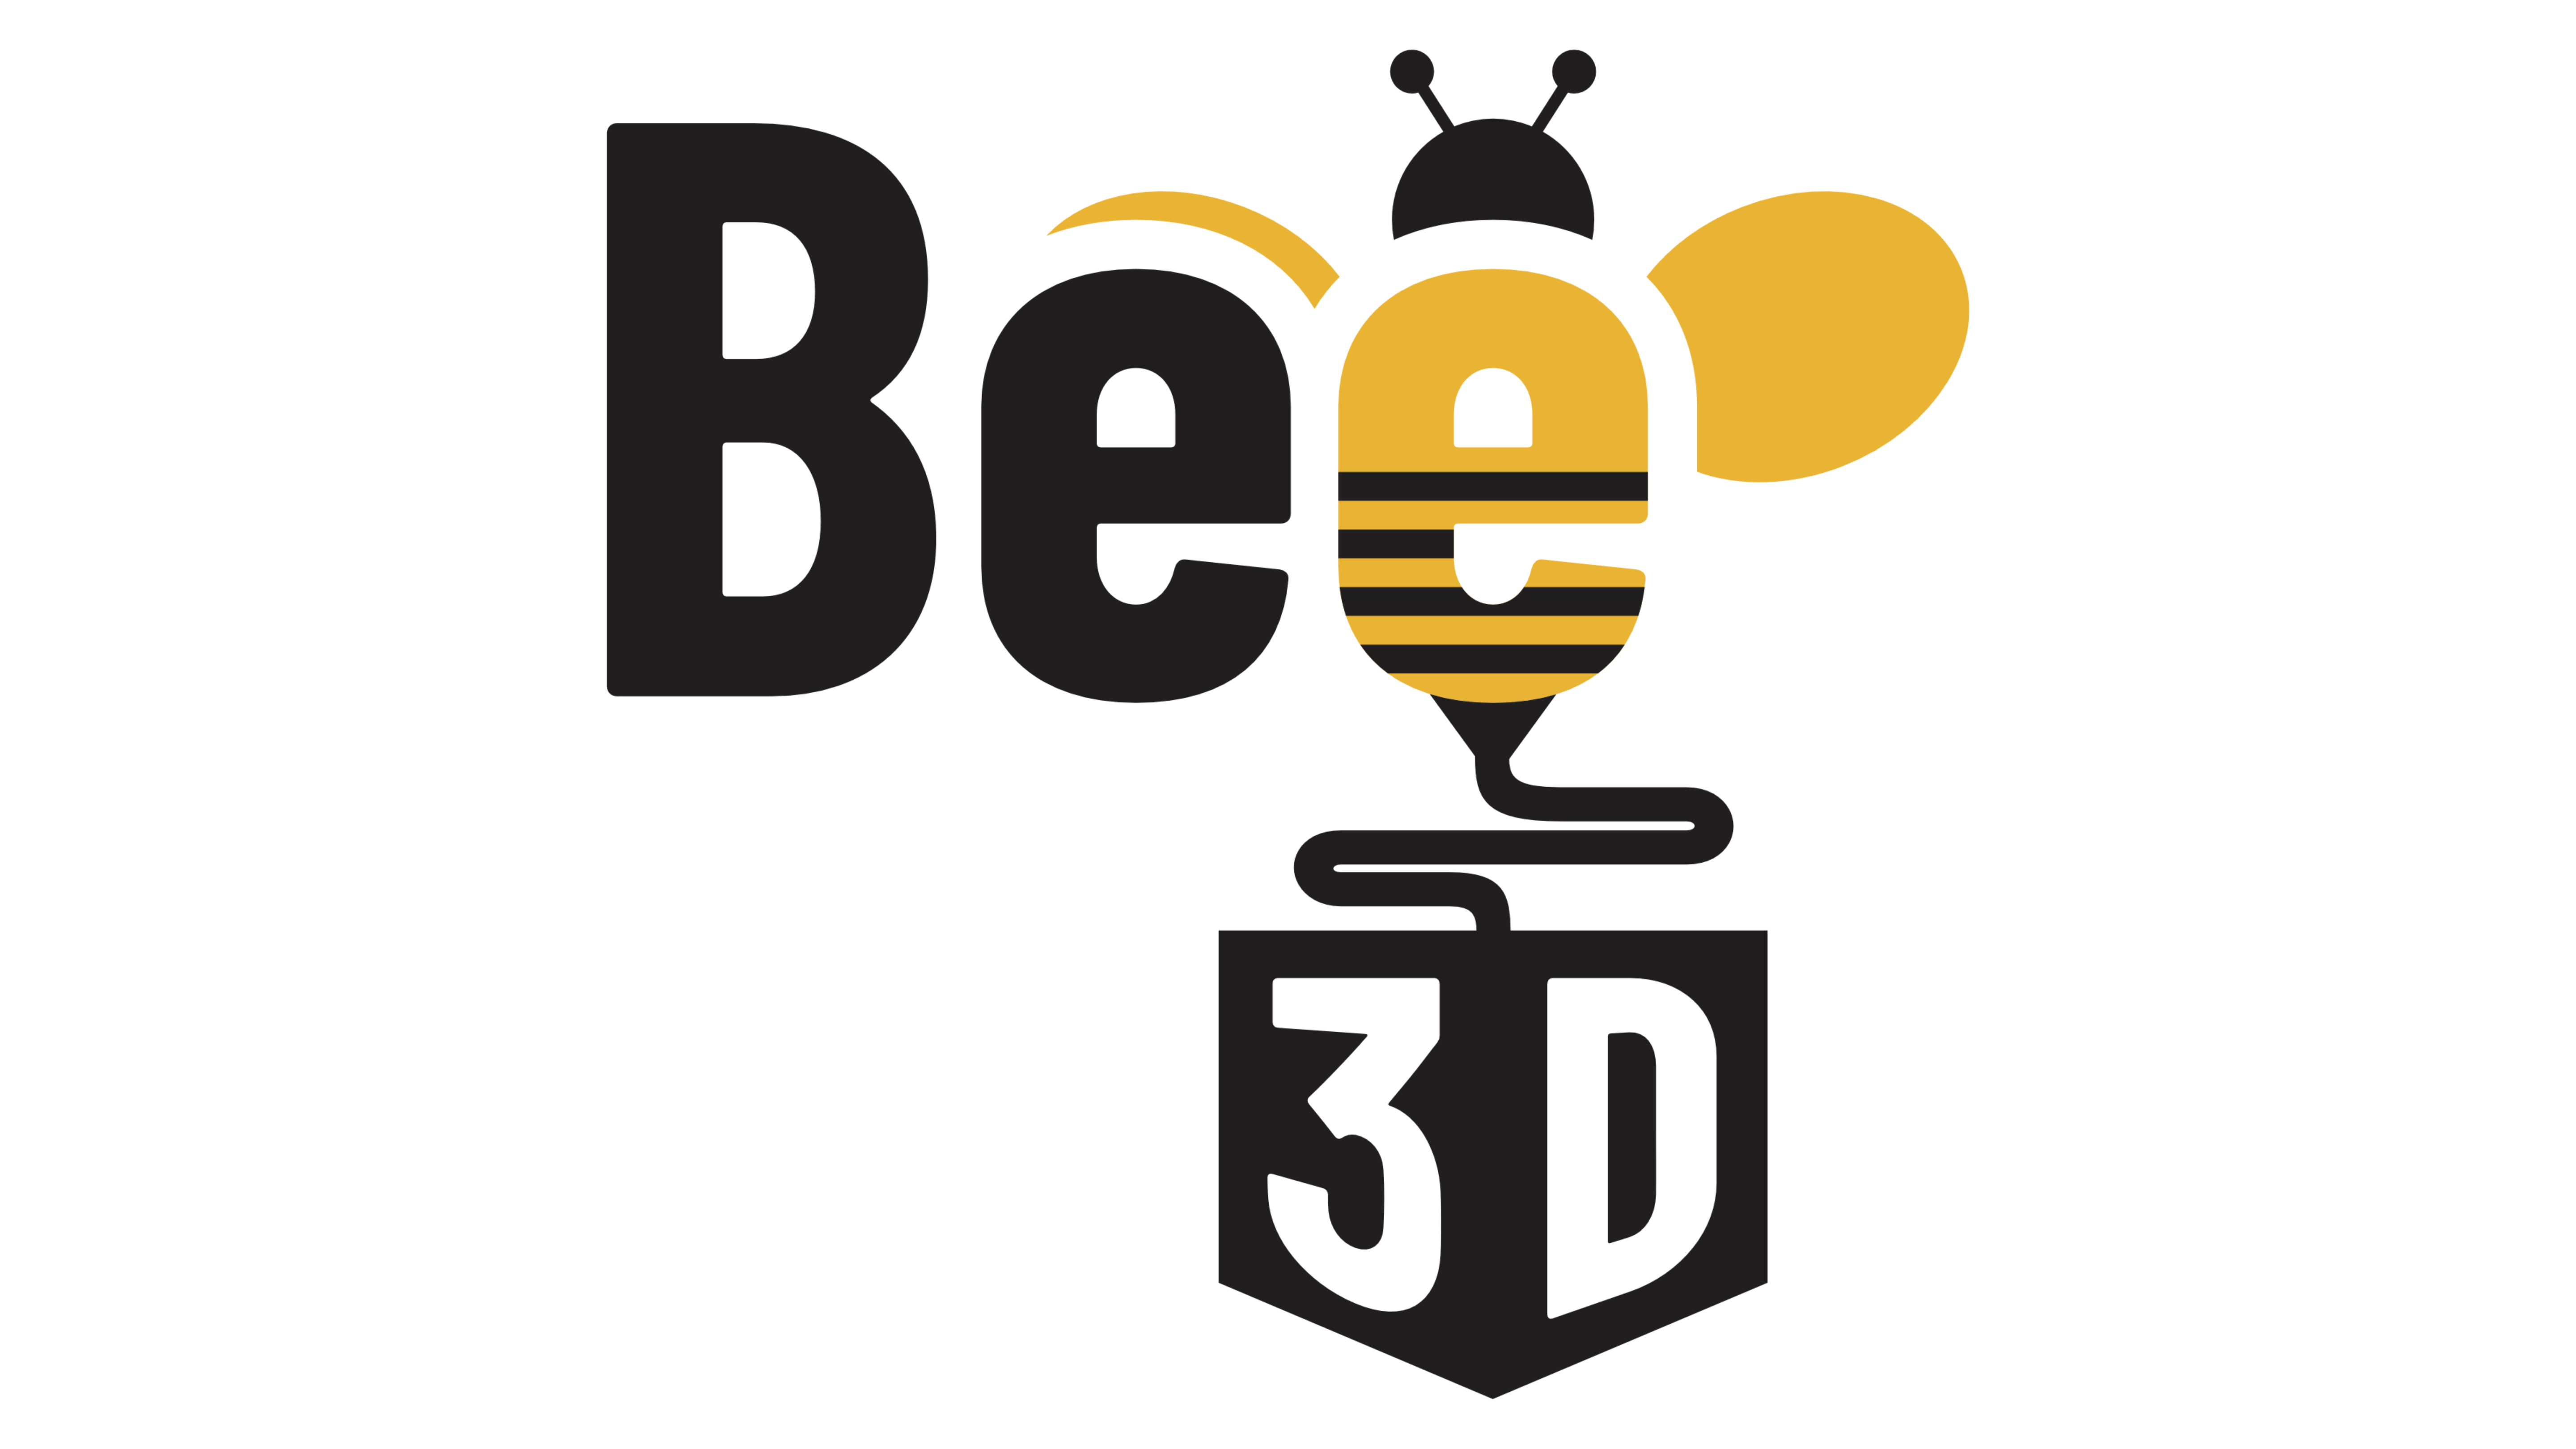 PROPUESTAS - BEE 3D